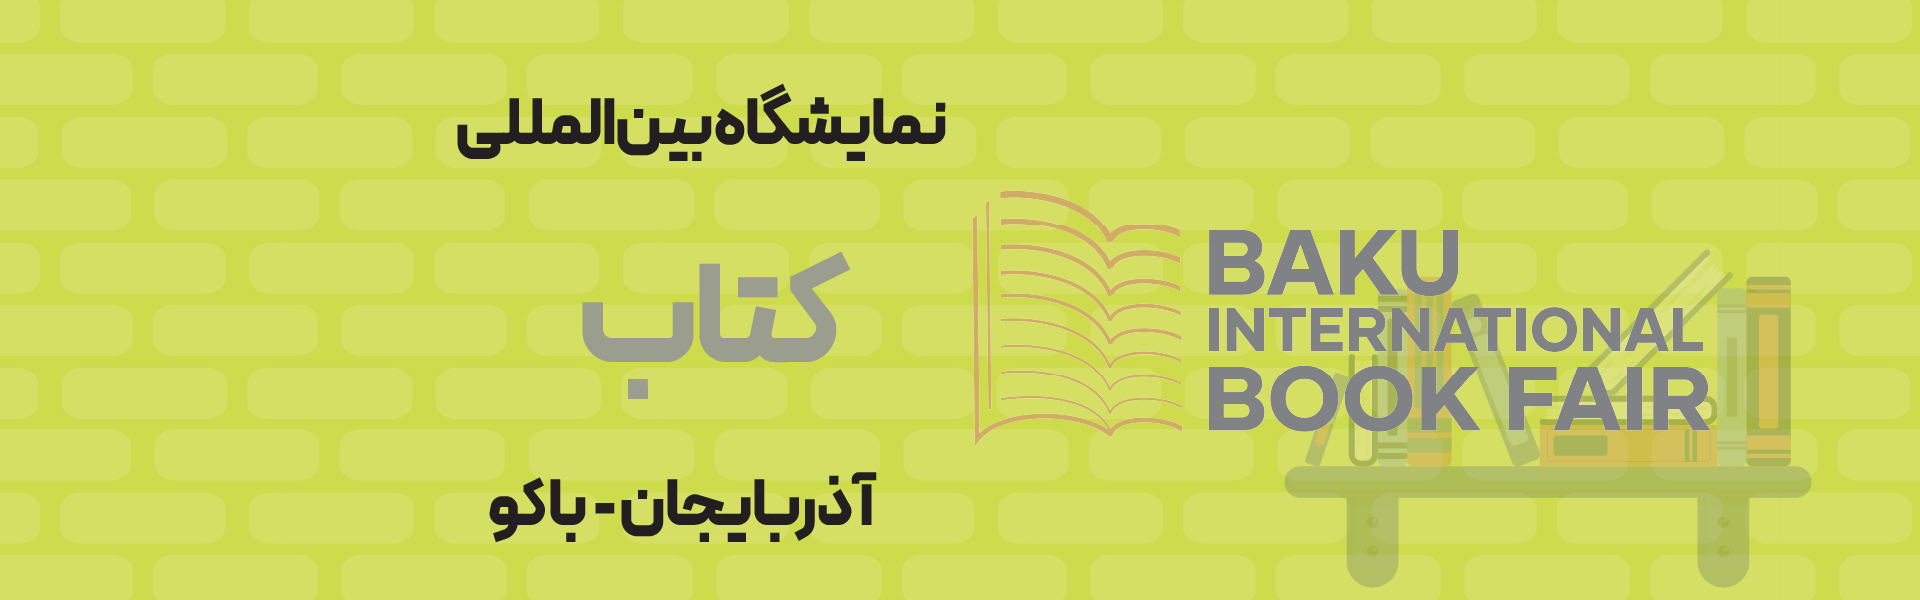 نمایشگاه بین المللی کتاب آذربایجان باکو